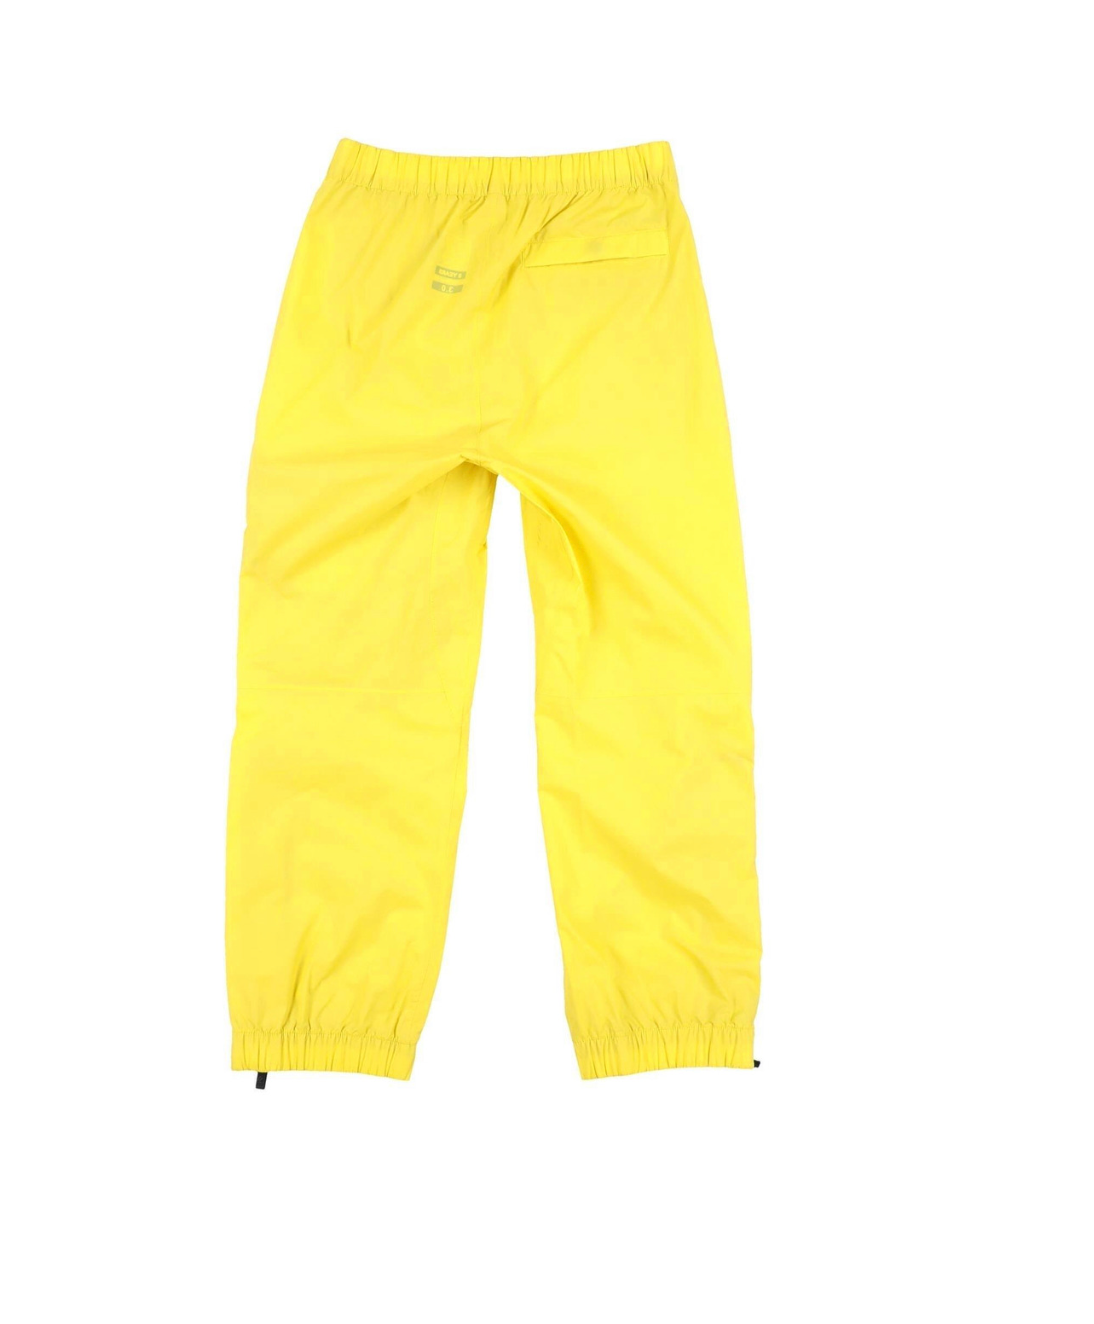 K-WAY - Pantalon imperméable jaune - 8 ans